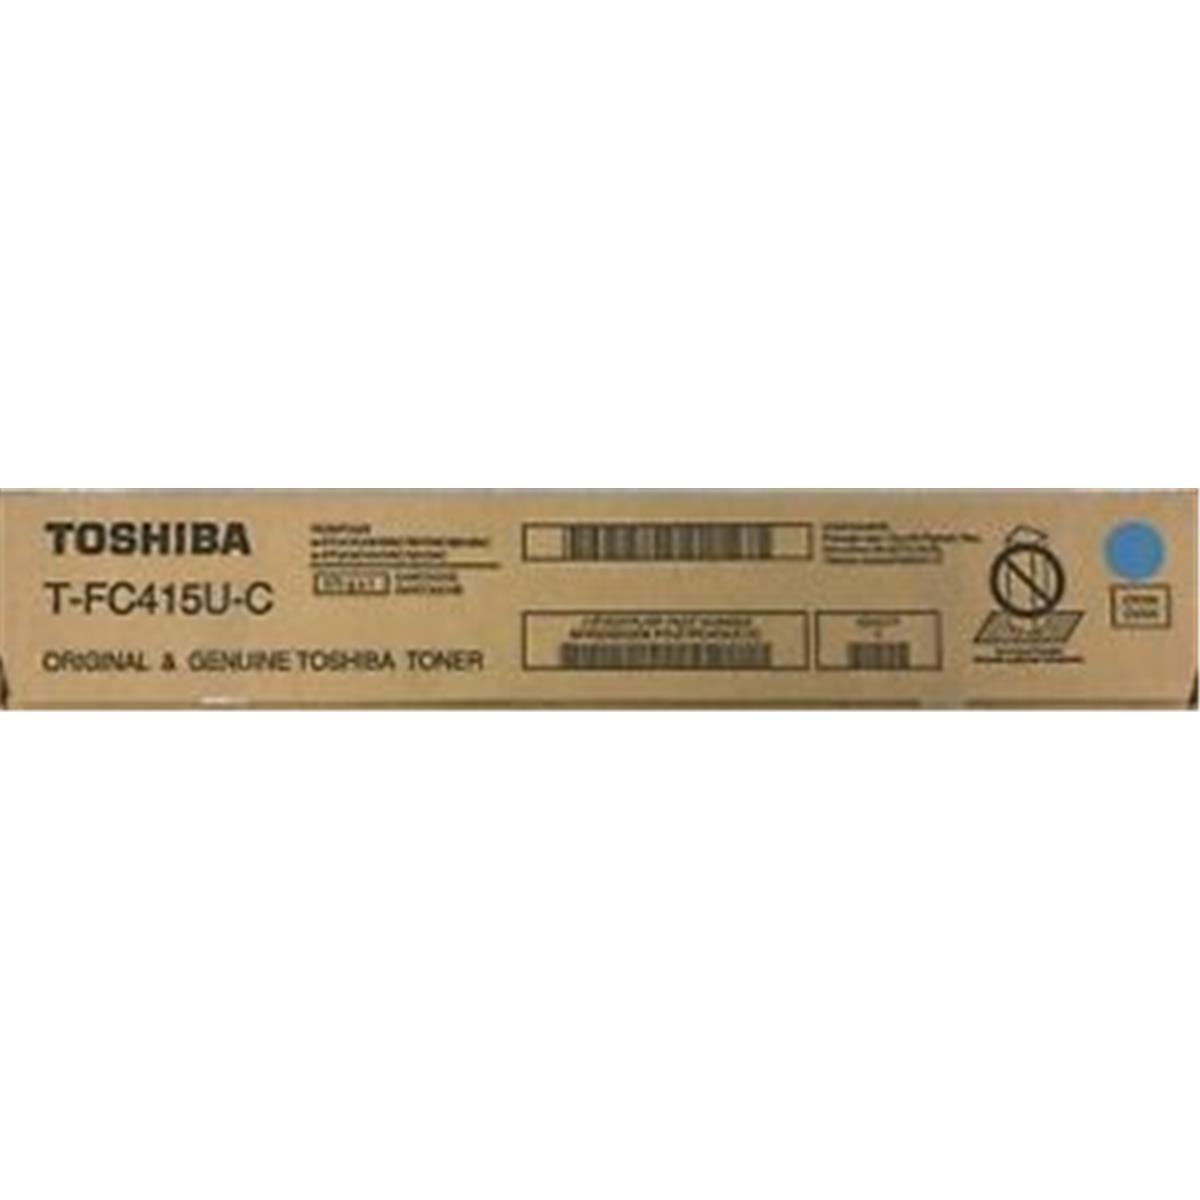 TOSHIBA TOSTFC415UC